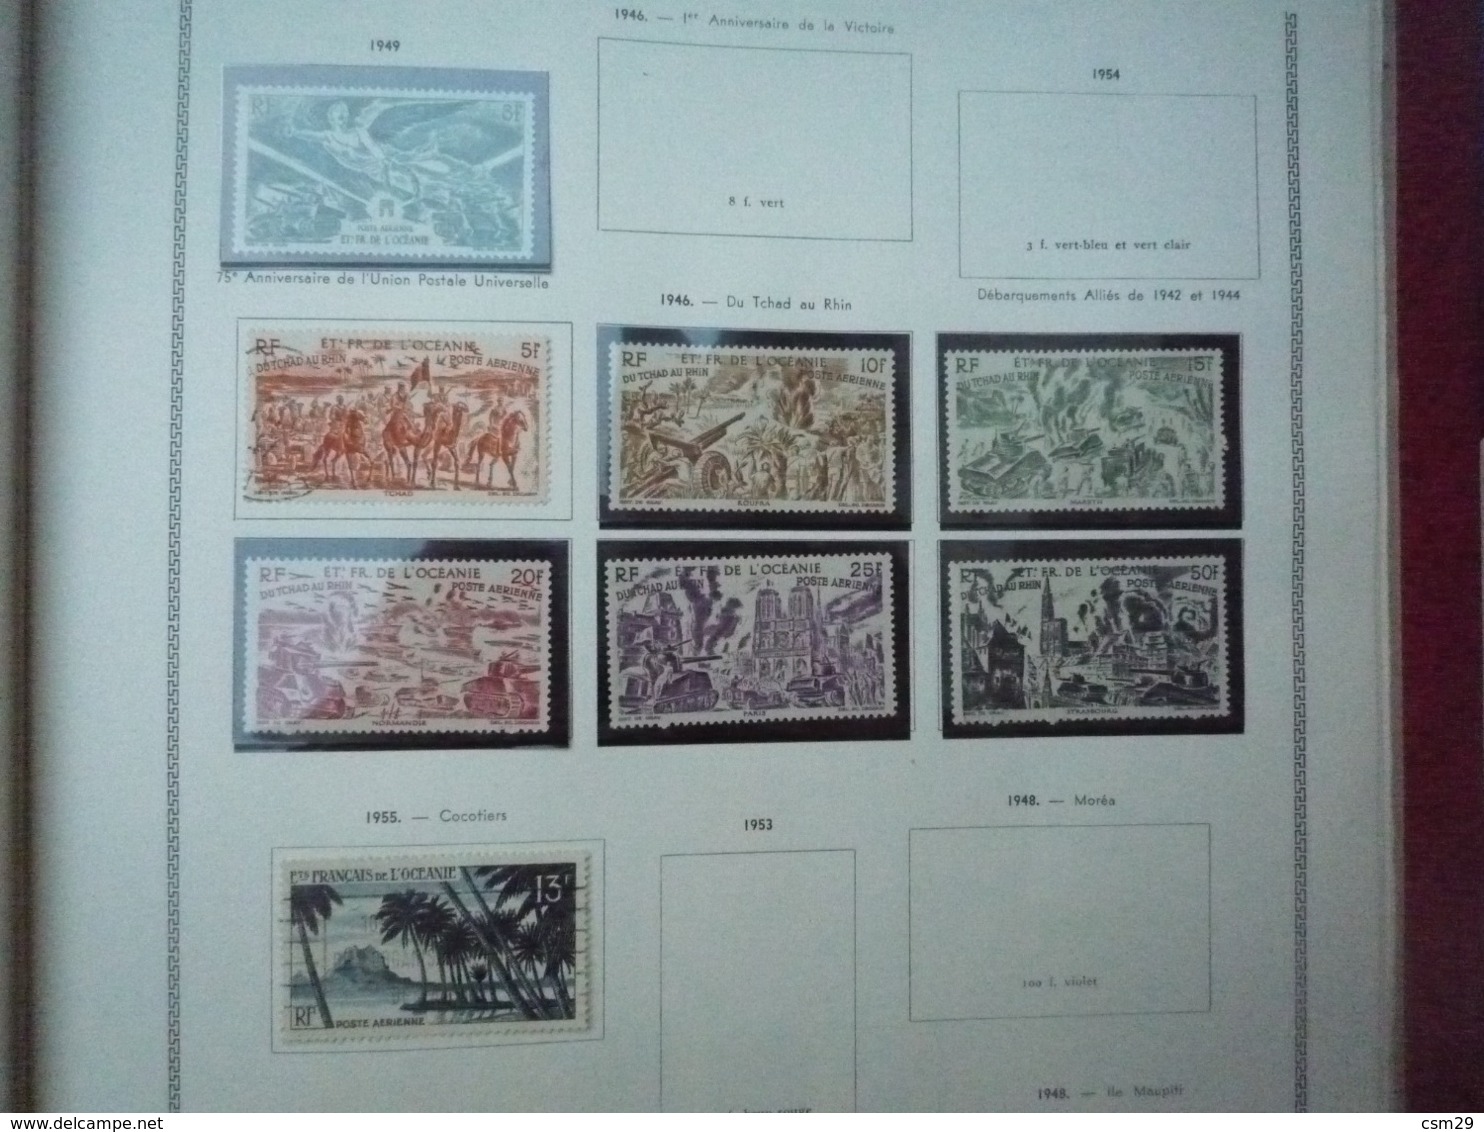 Collection en Album Colonies Françaises  Niger à Ile de Rouad - A compléter -  56 scans